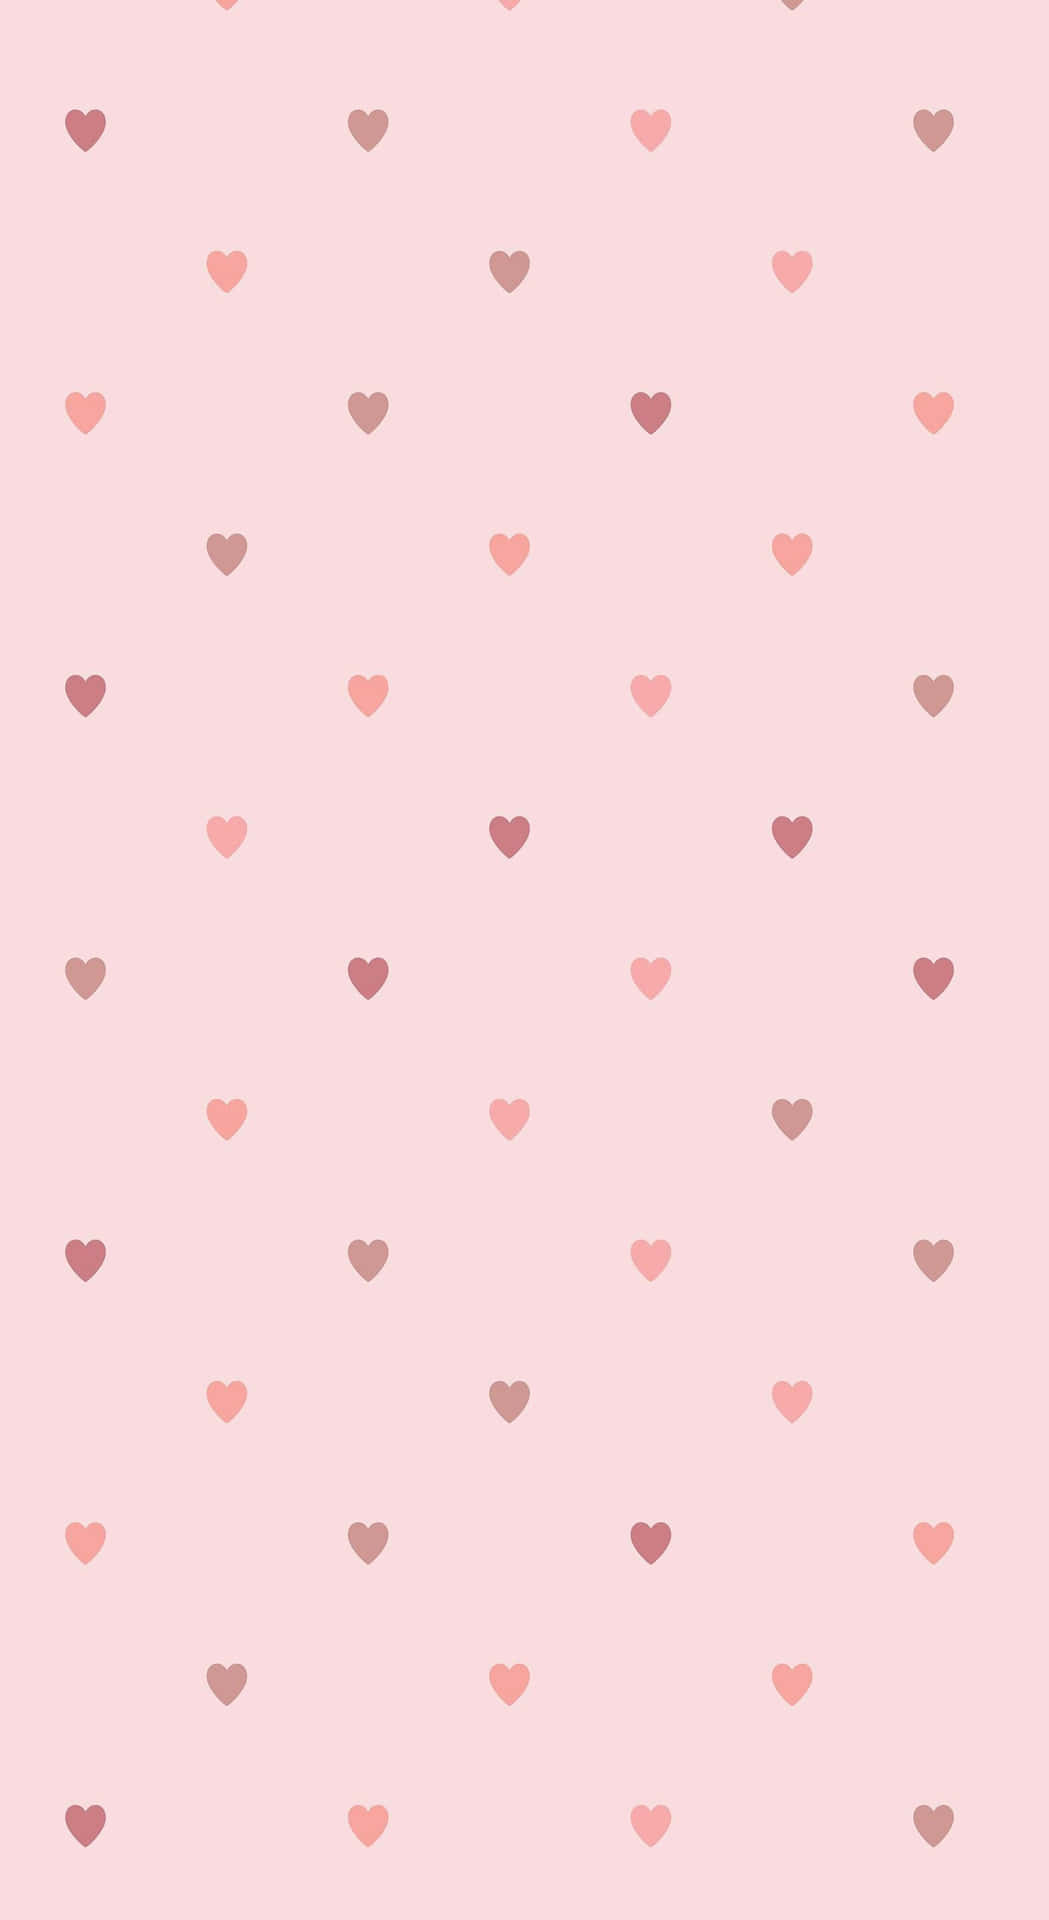 Download Cute Hearts Galore Wallpaper Wallpaper | Wallpapers.com